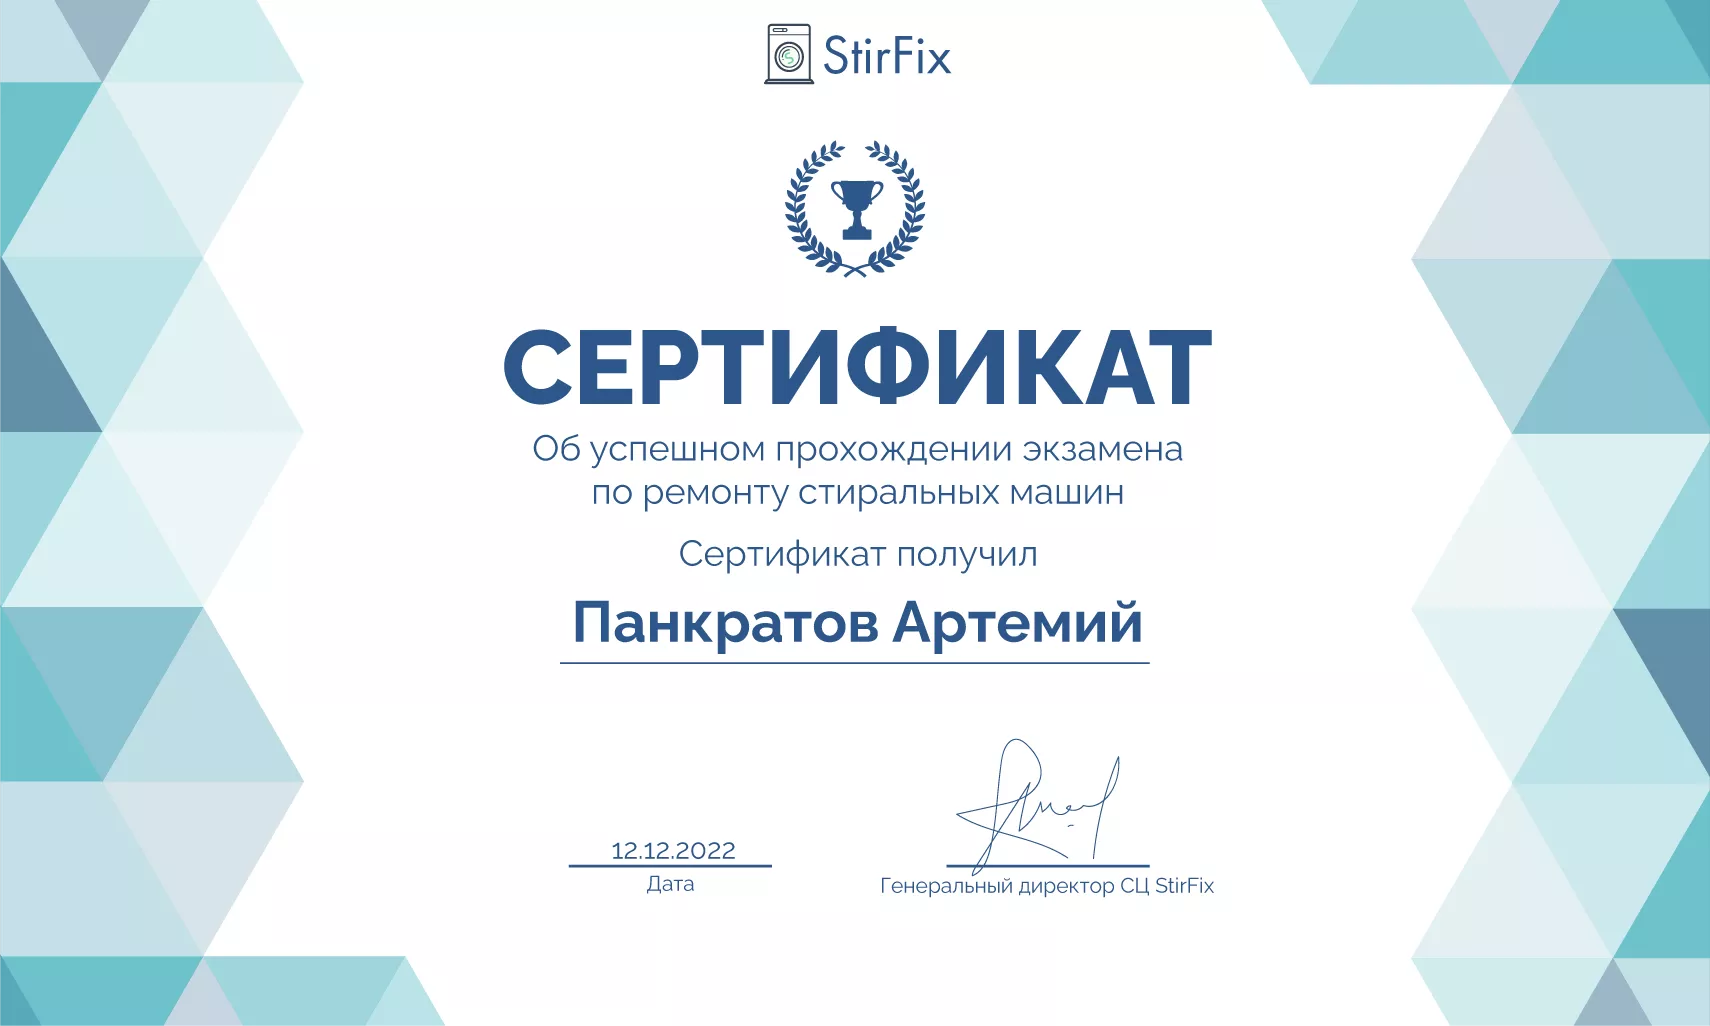 Панкратов Артемий сертификат мастера по ремонту стиральных машин